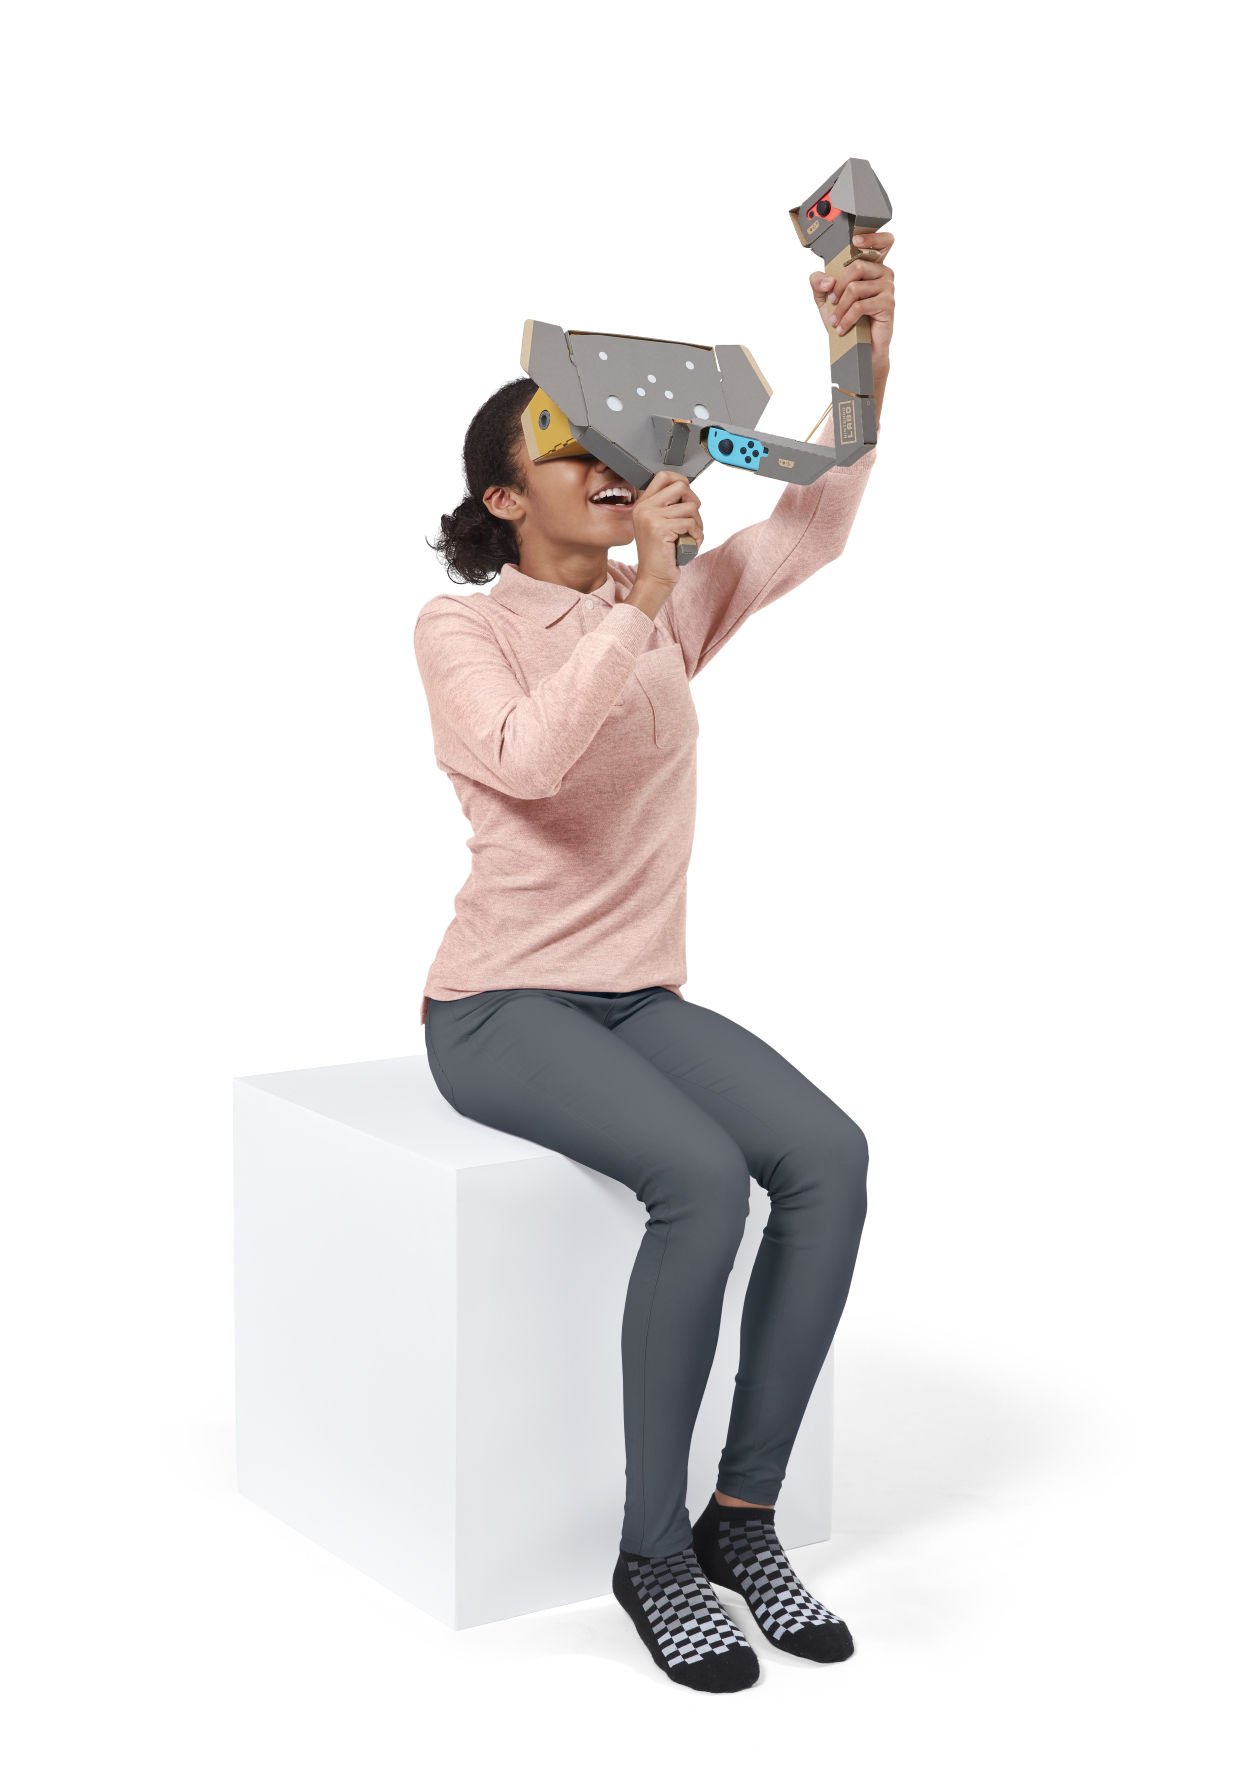 Yeni Nintendo Labo kit Switch'i sanal gerçeklik gözlüğüne çevirecek